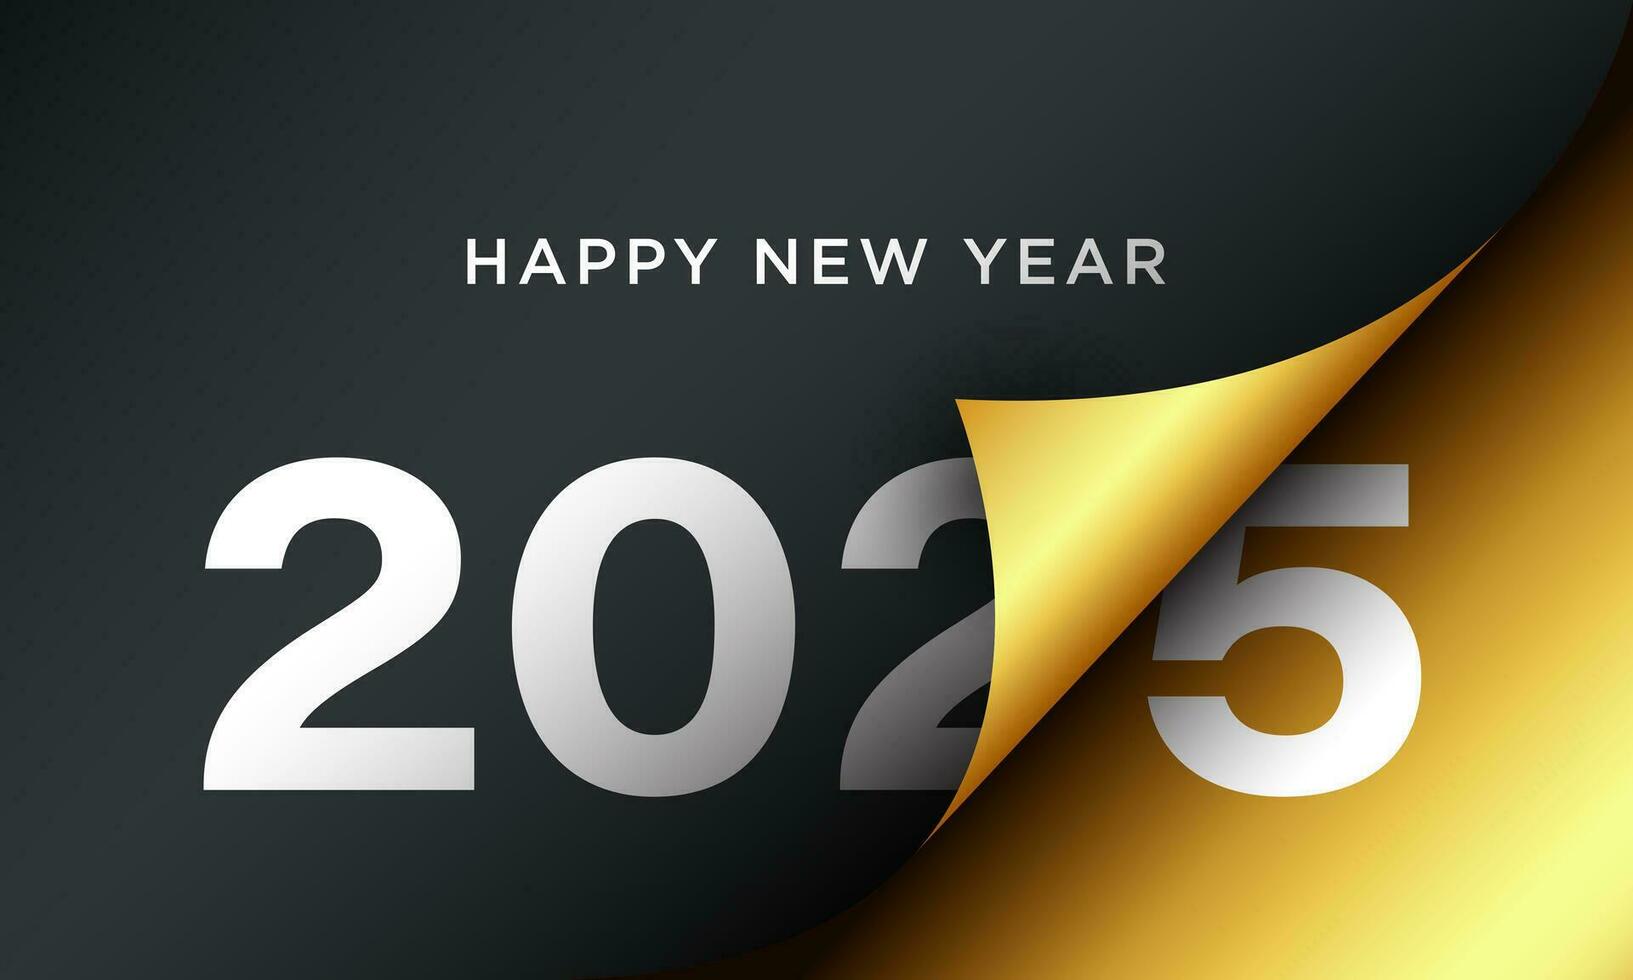 2025 glücklich Neu Jahr Hintergrund Design. vektor